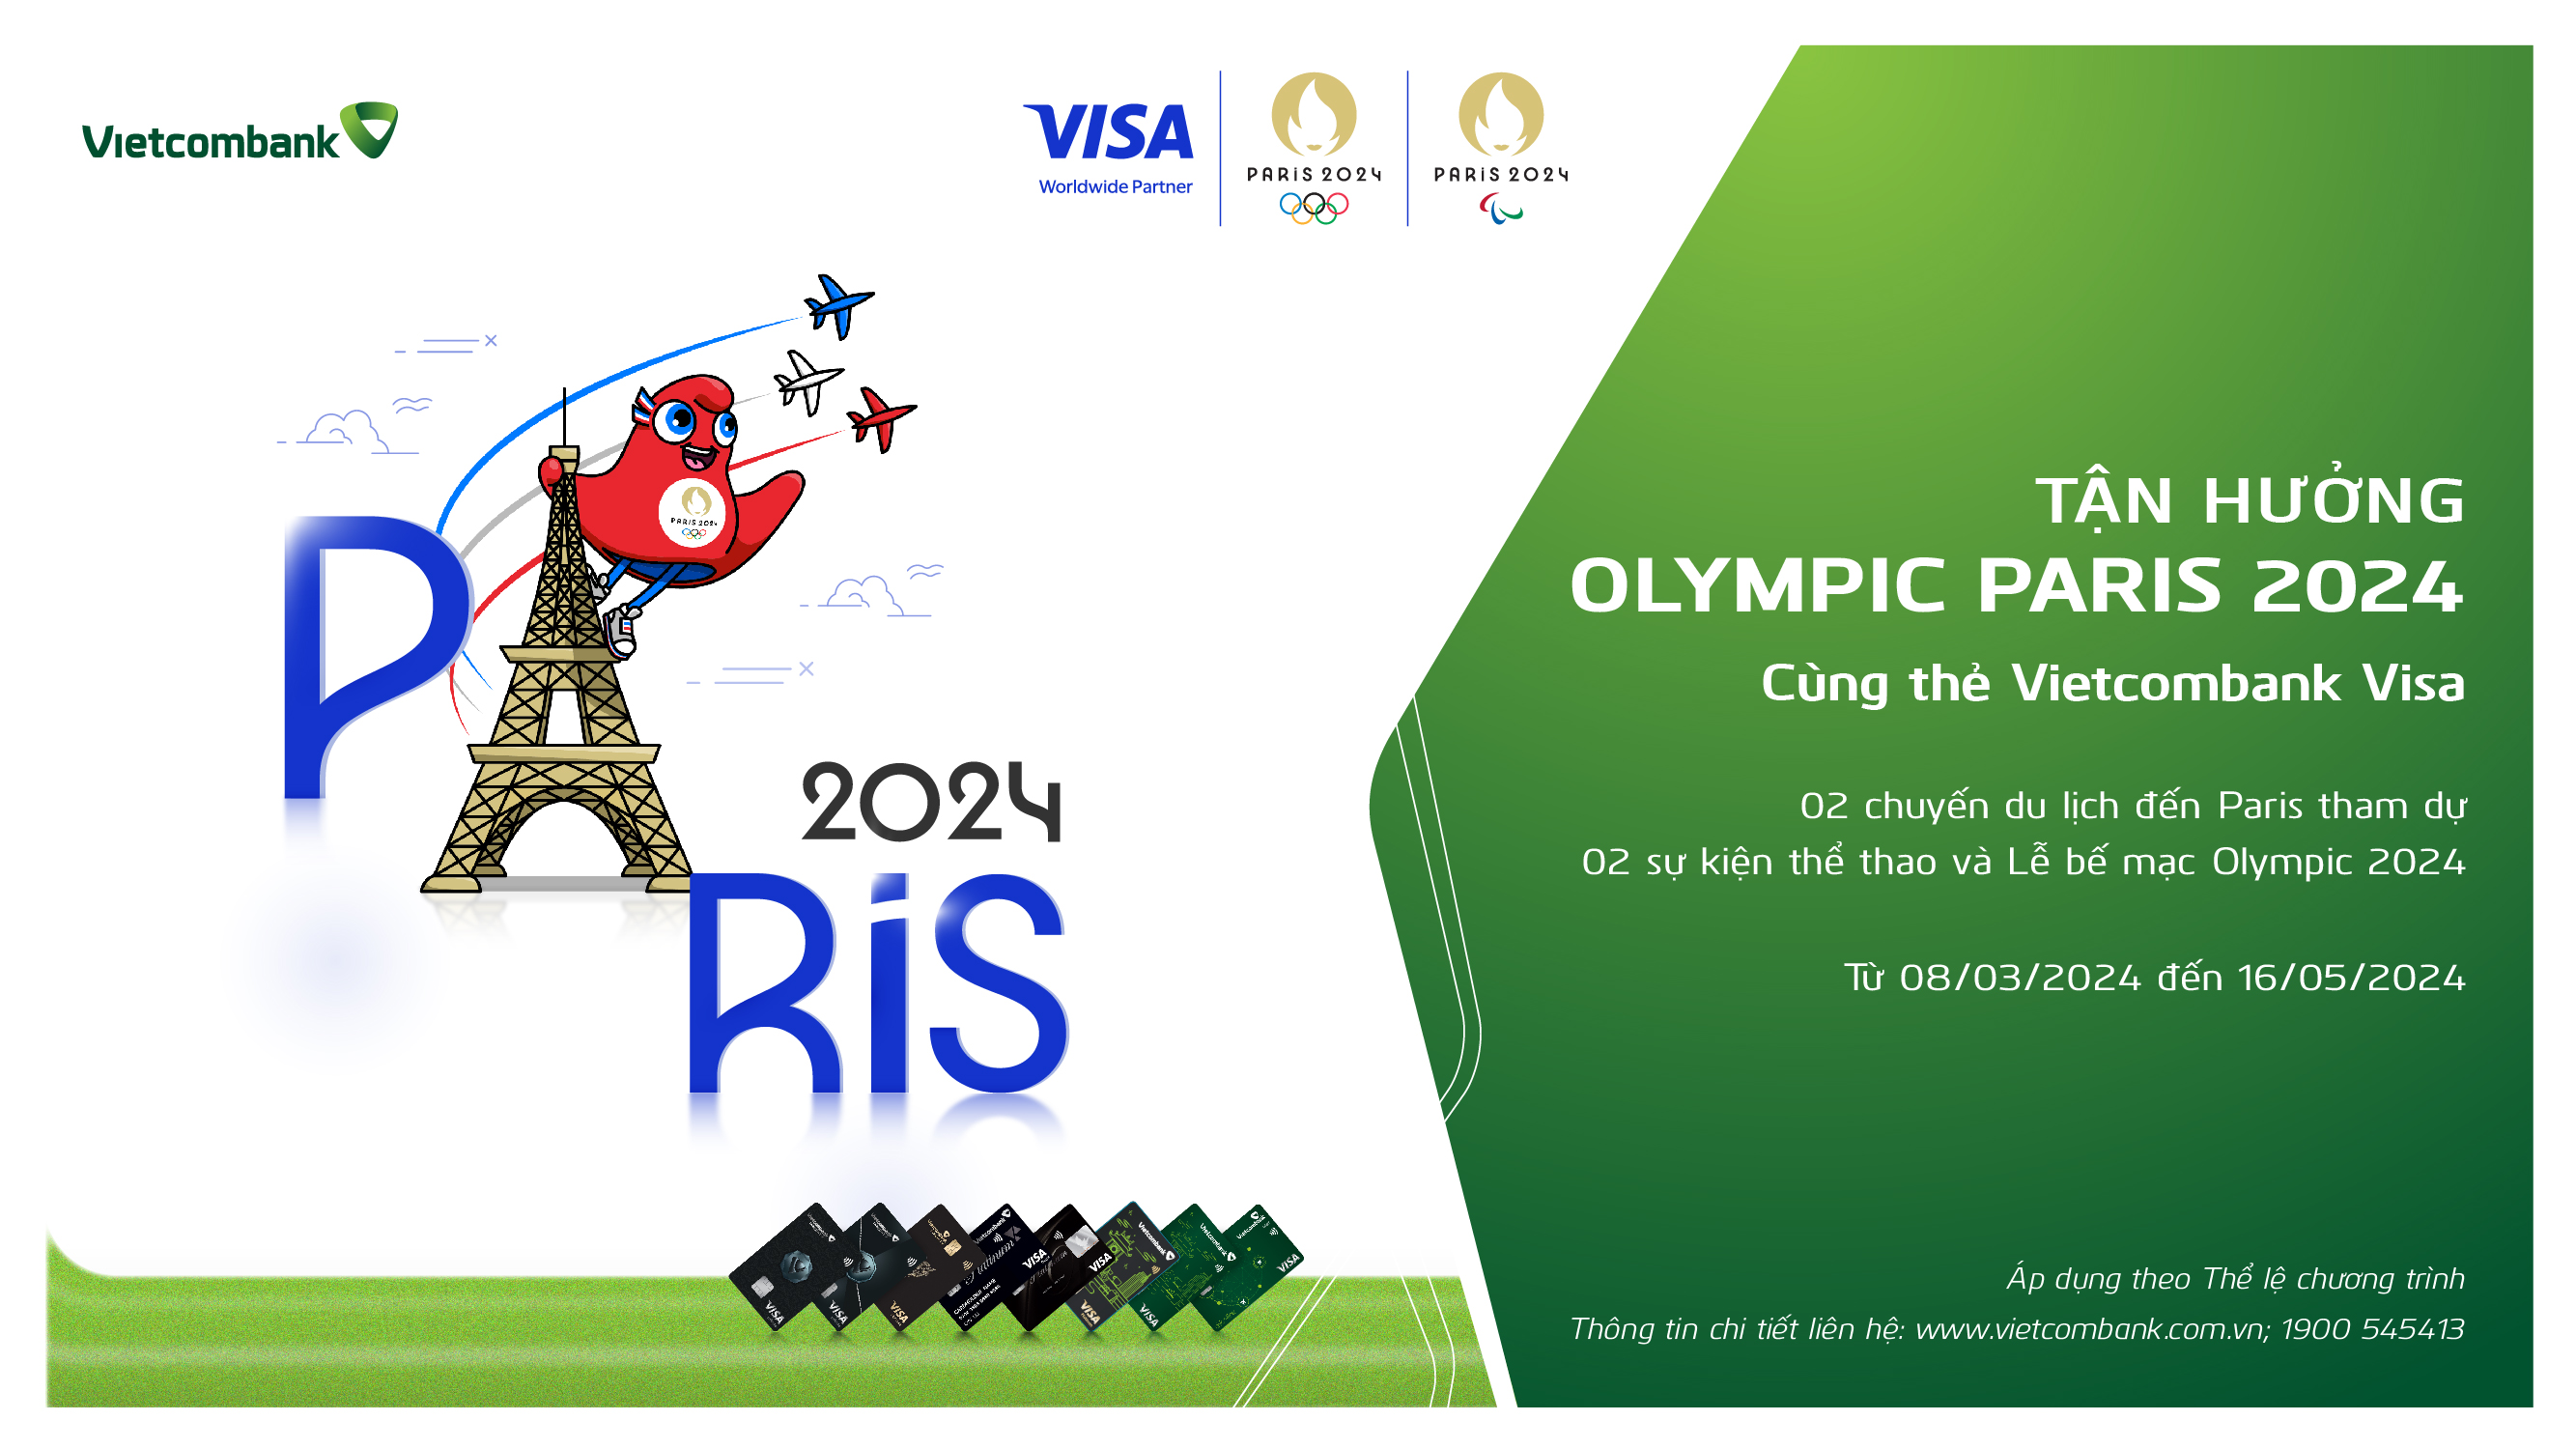 Vietcombank tổ chức chương trình khuyến mại “Tận hưởng Olympic Paris 2024 cùng Vietcombank Visa”.